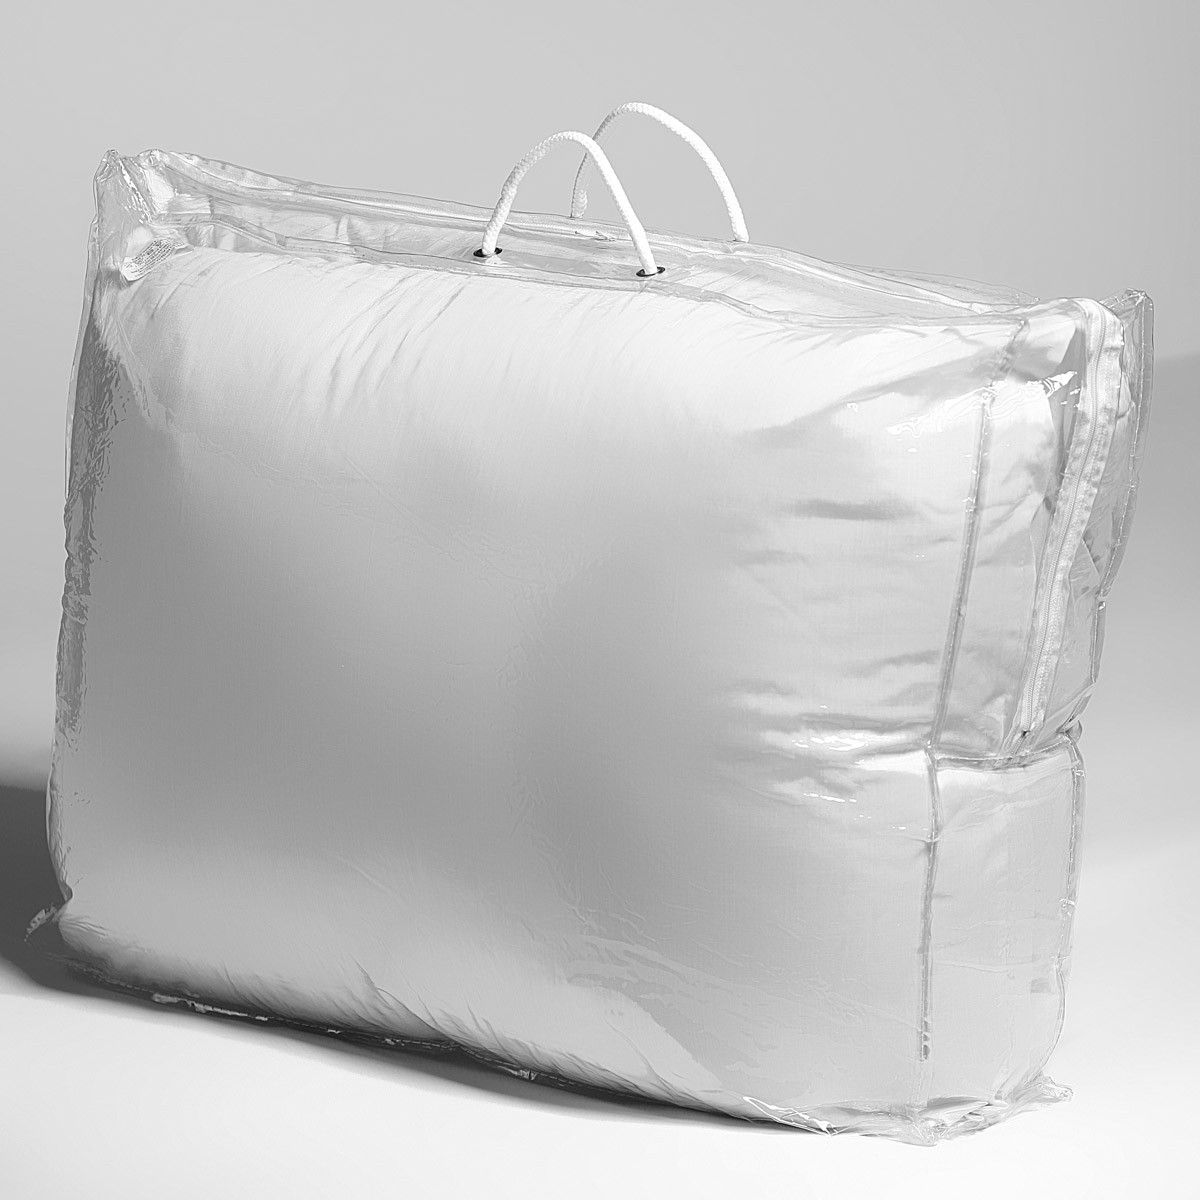 Мешок из пвх. Пакет подушка. Сумка ПВХ для подушек. Пакеты для хранения одеял и подушек. Пакет для подушки с молнией.